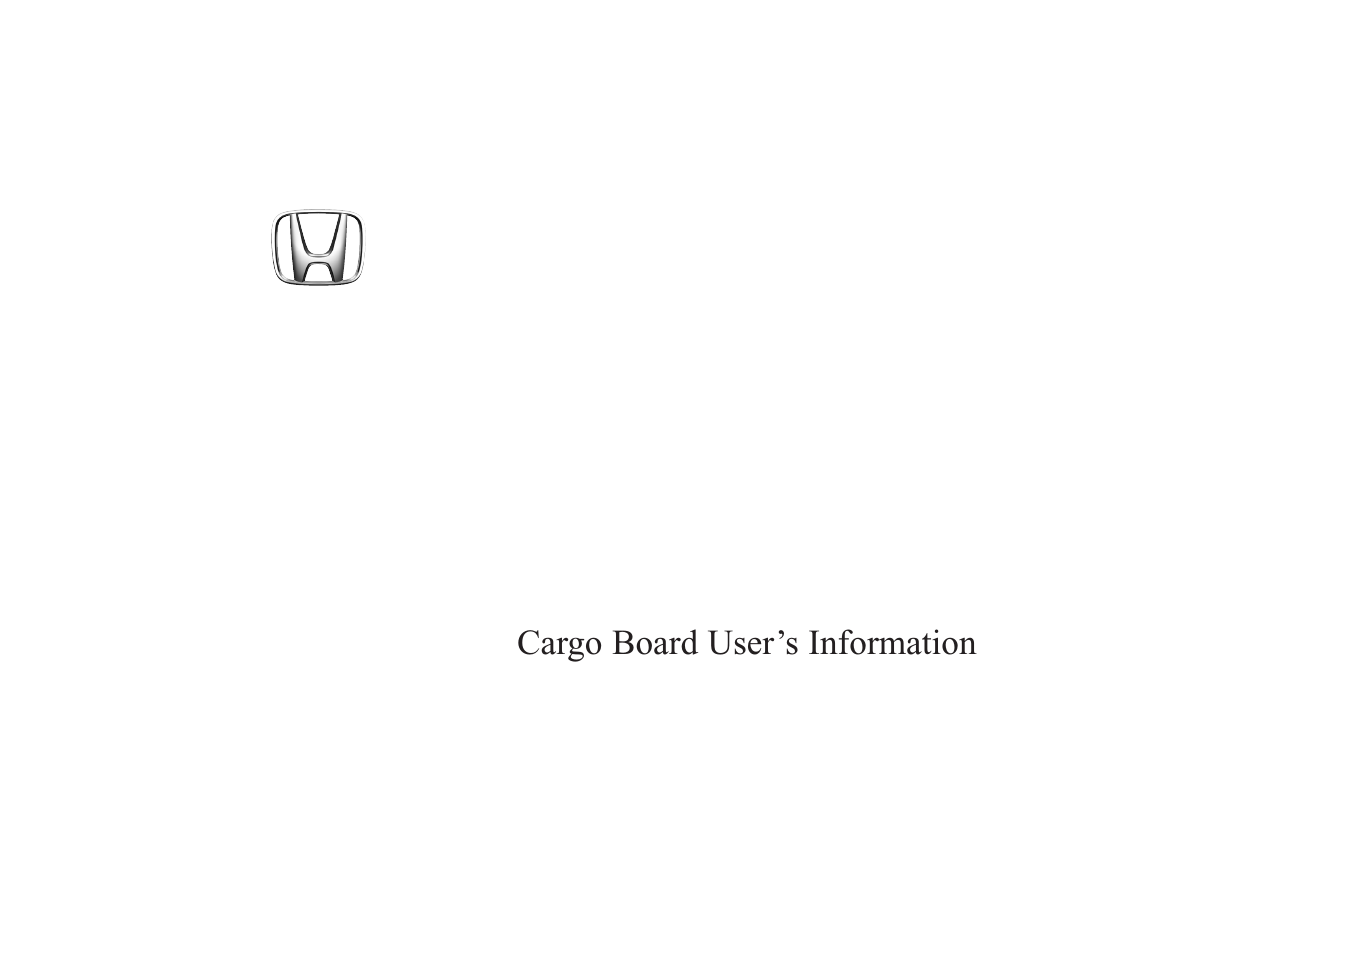 2004 Cargo Board